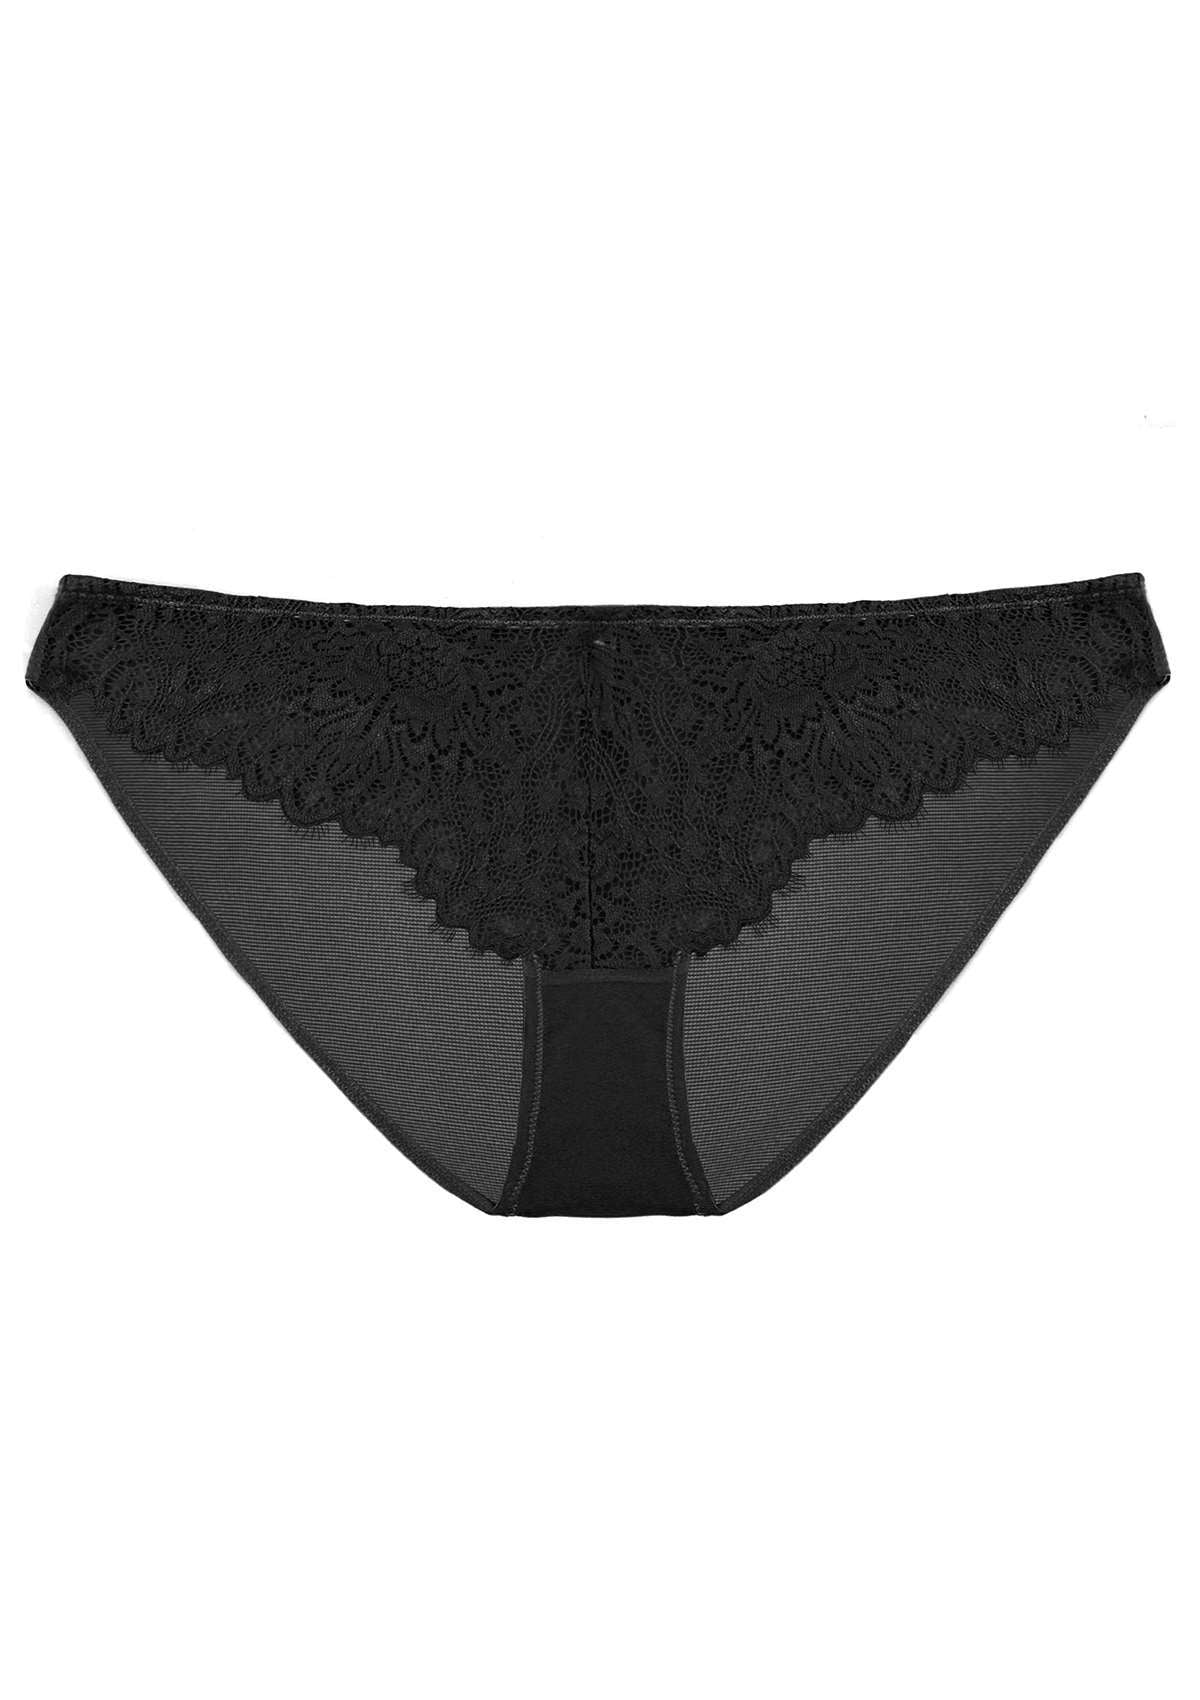 HSIA Sunflower Exquisite Lace Bikini Underwear - XXXL / Black